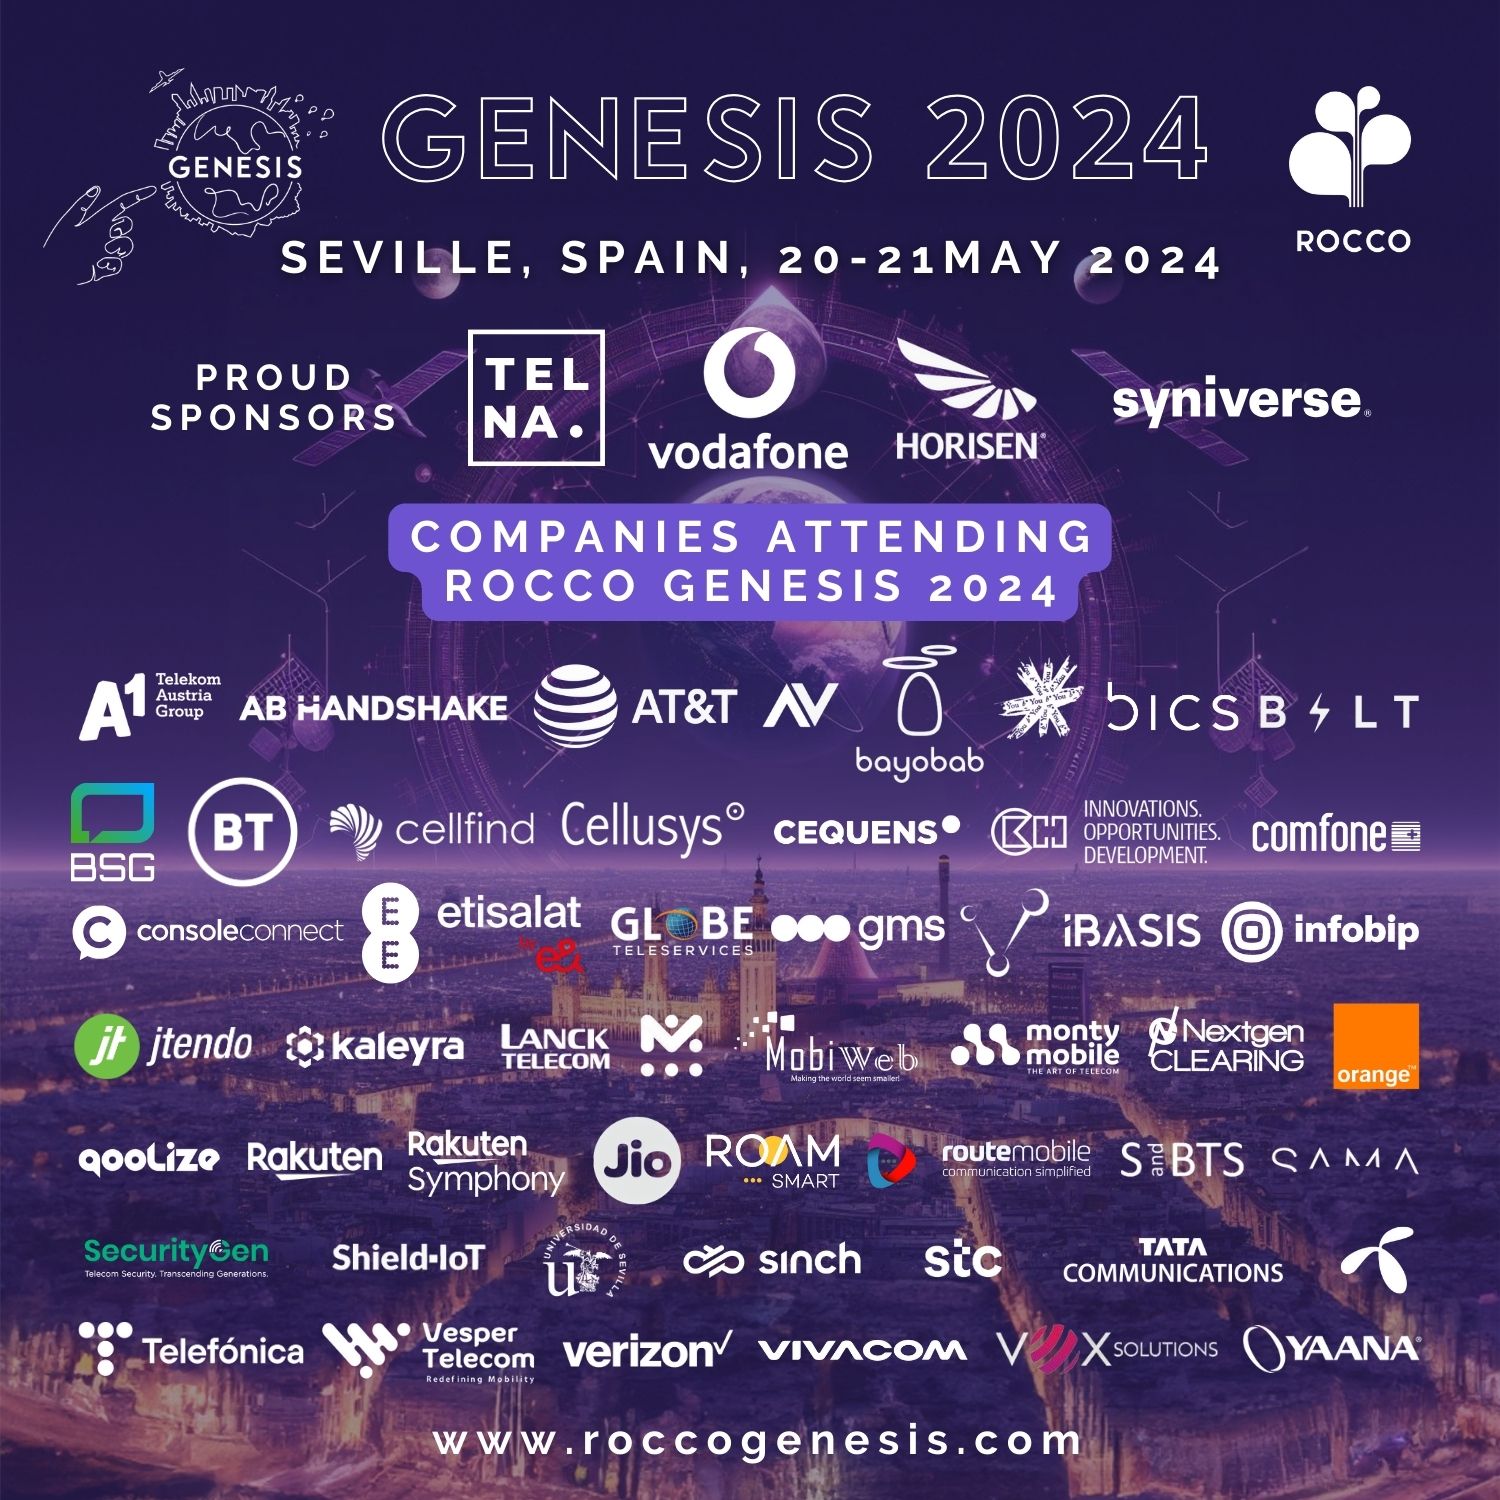 Genesis 2024 attendees